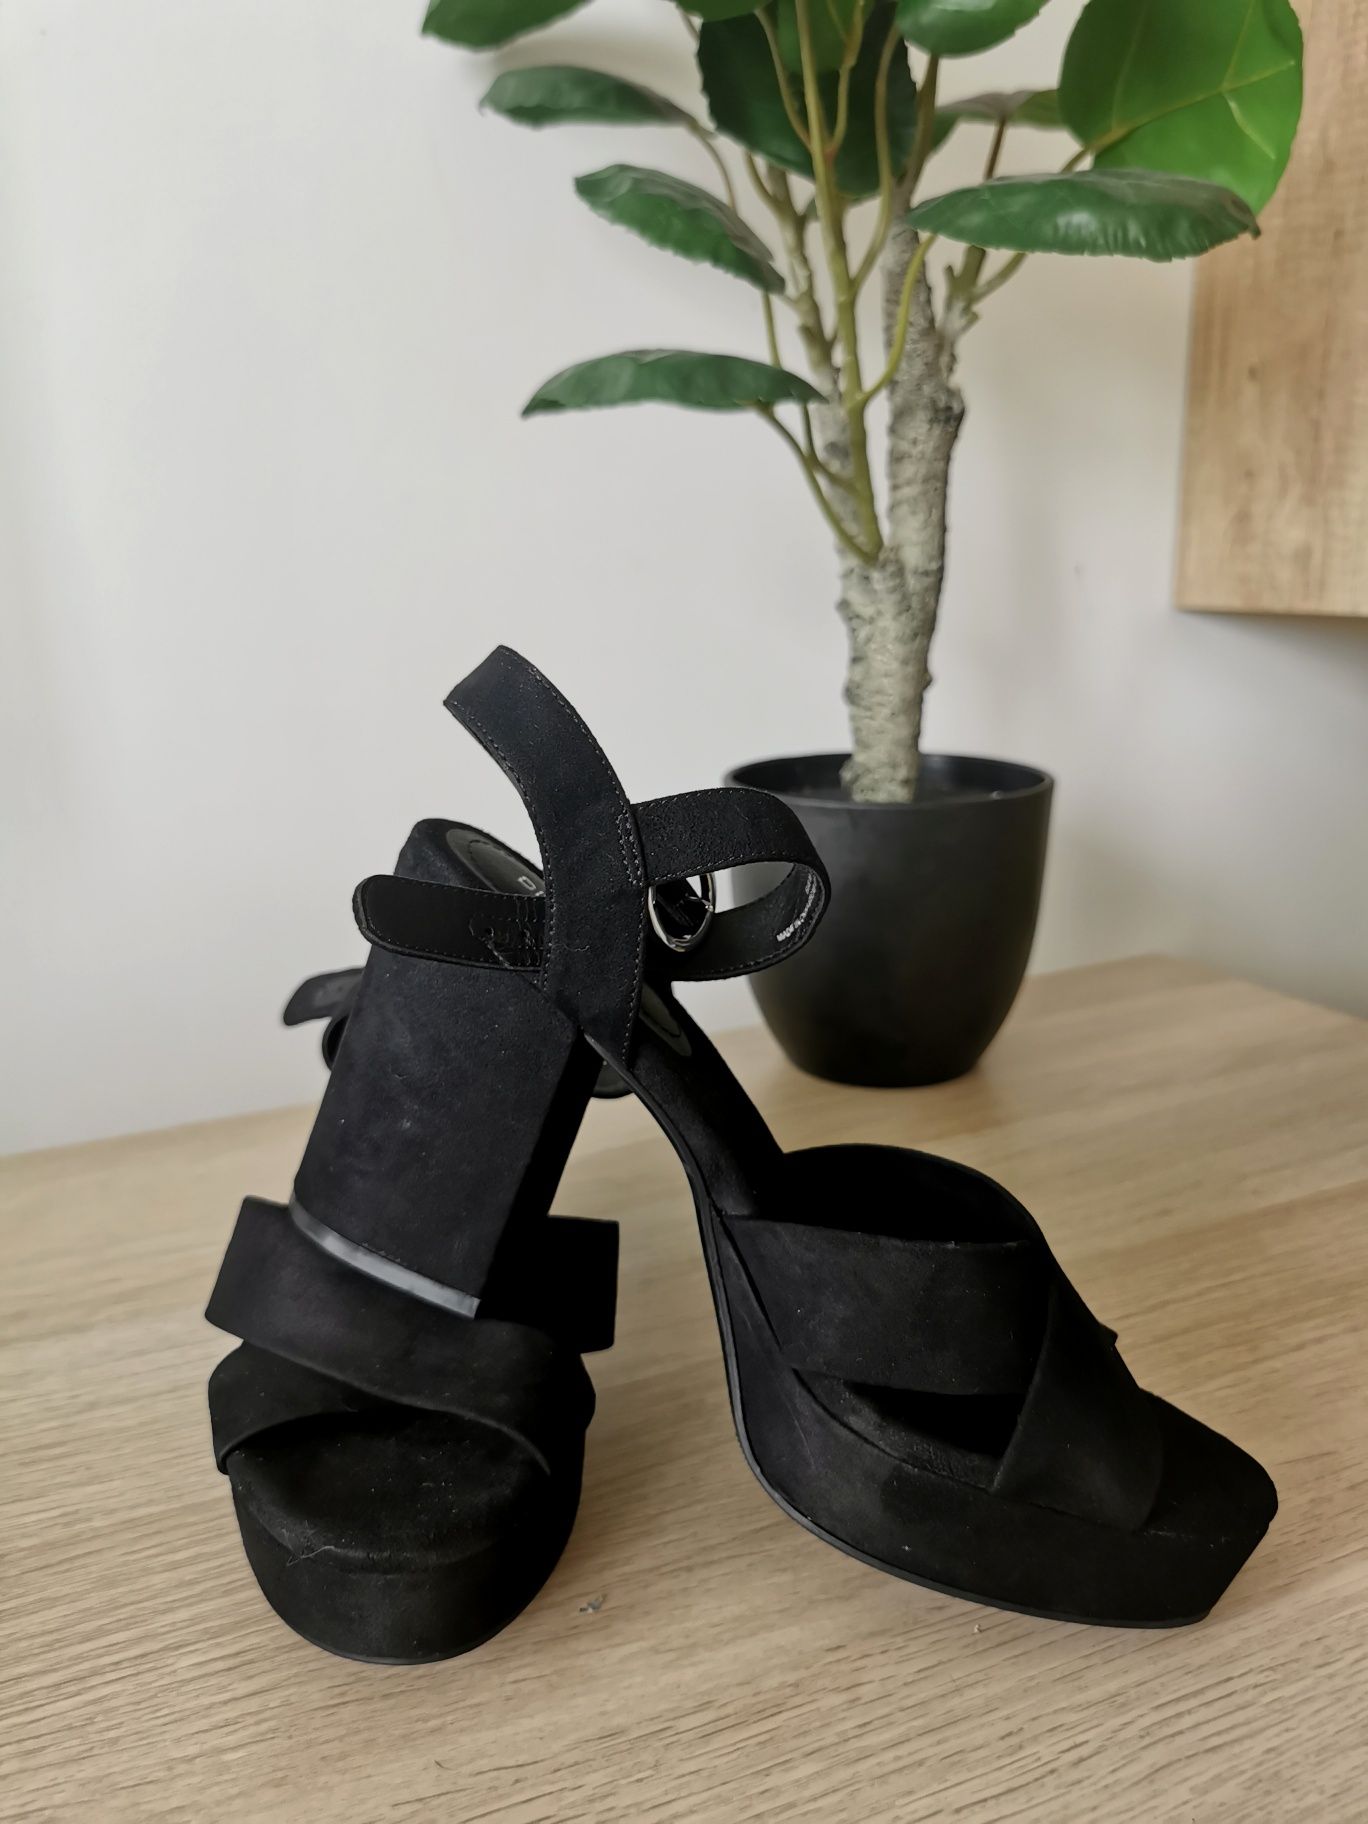 Sandale H&M Noi, negre, toc gros si platforma